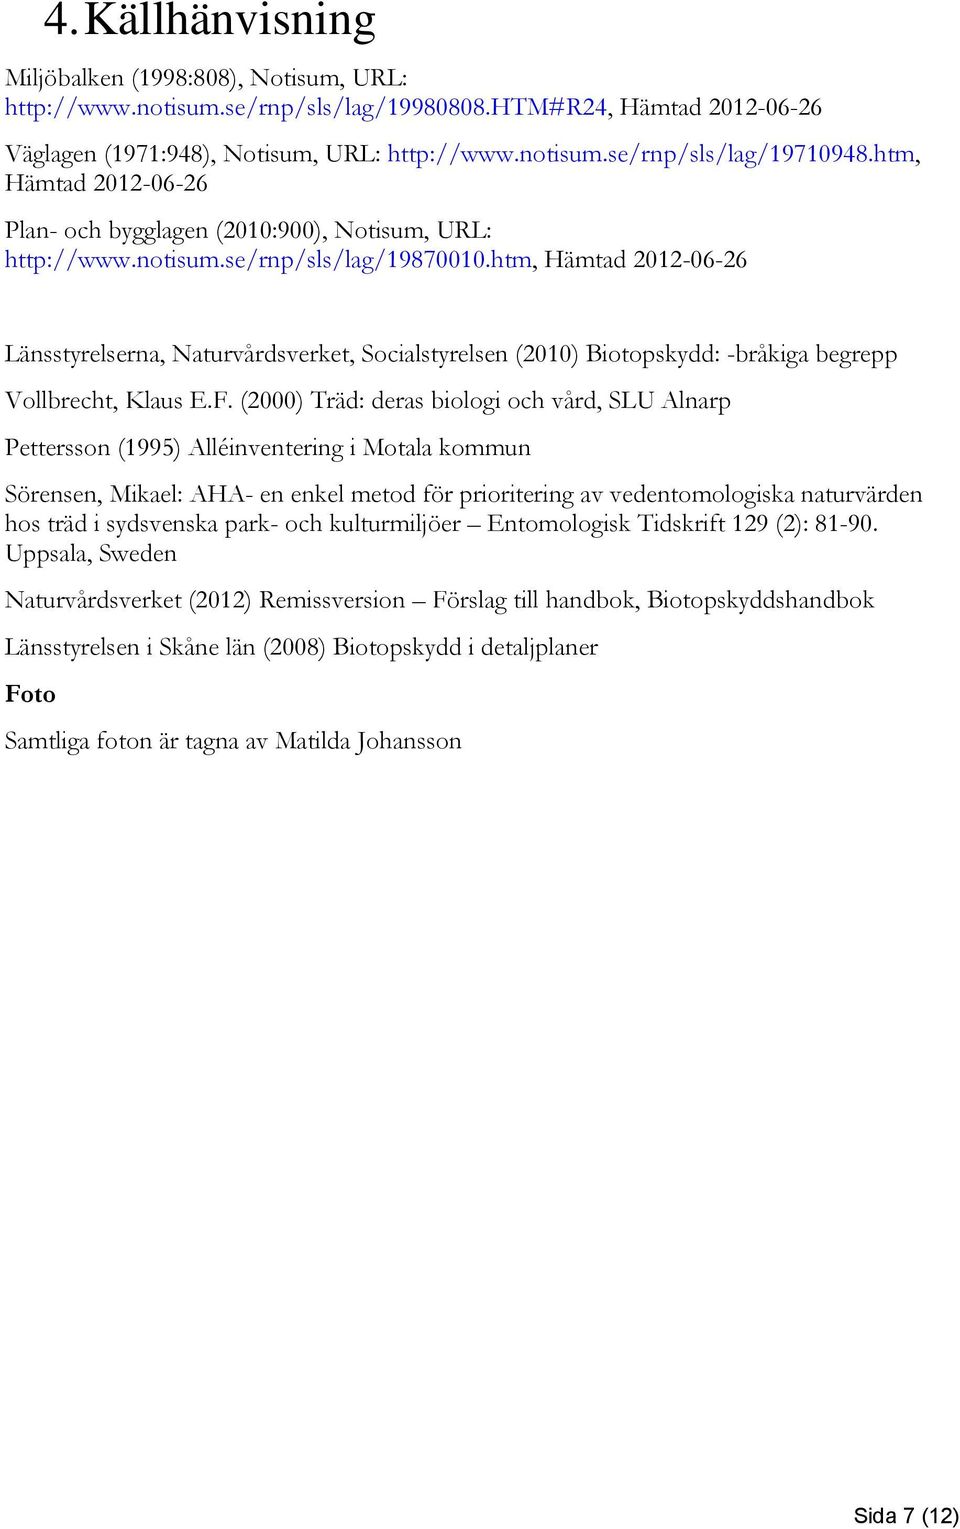 htm, Hämtad 2012-06-26 Länsstyrelserna, Naturvårdsverket, Socialstyrelsen (2010) Biotopskydd: -bråkiga begrepp Vollbrecht, Klaus E.F.